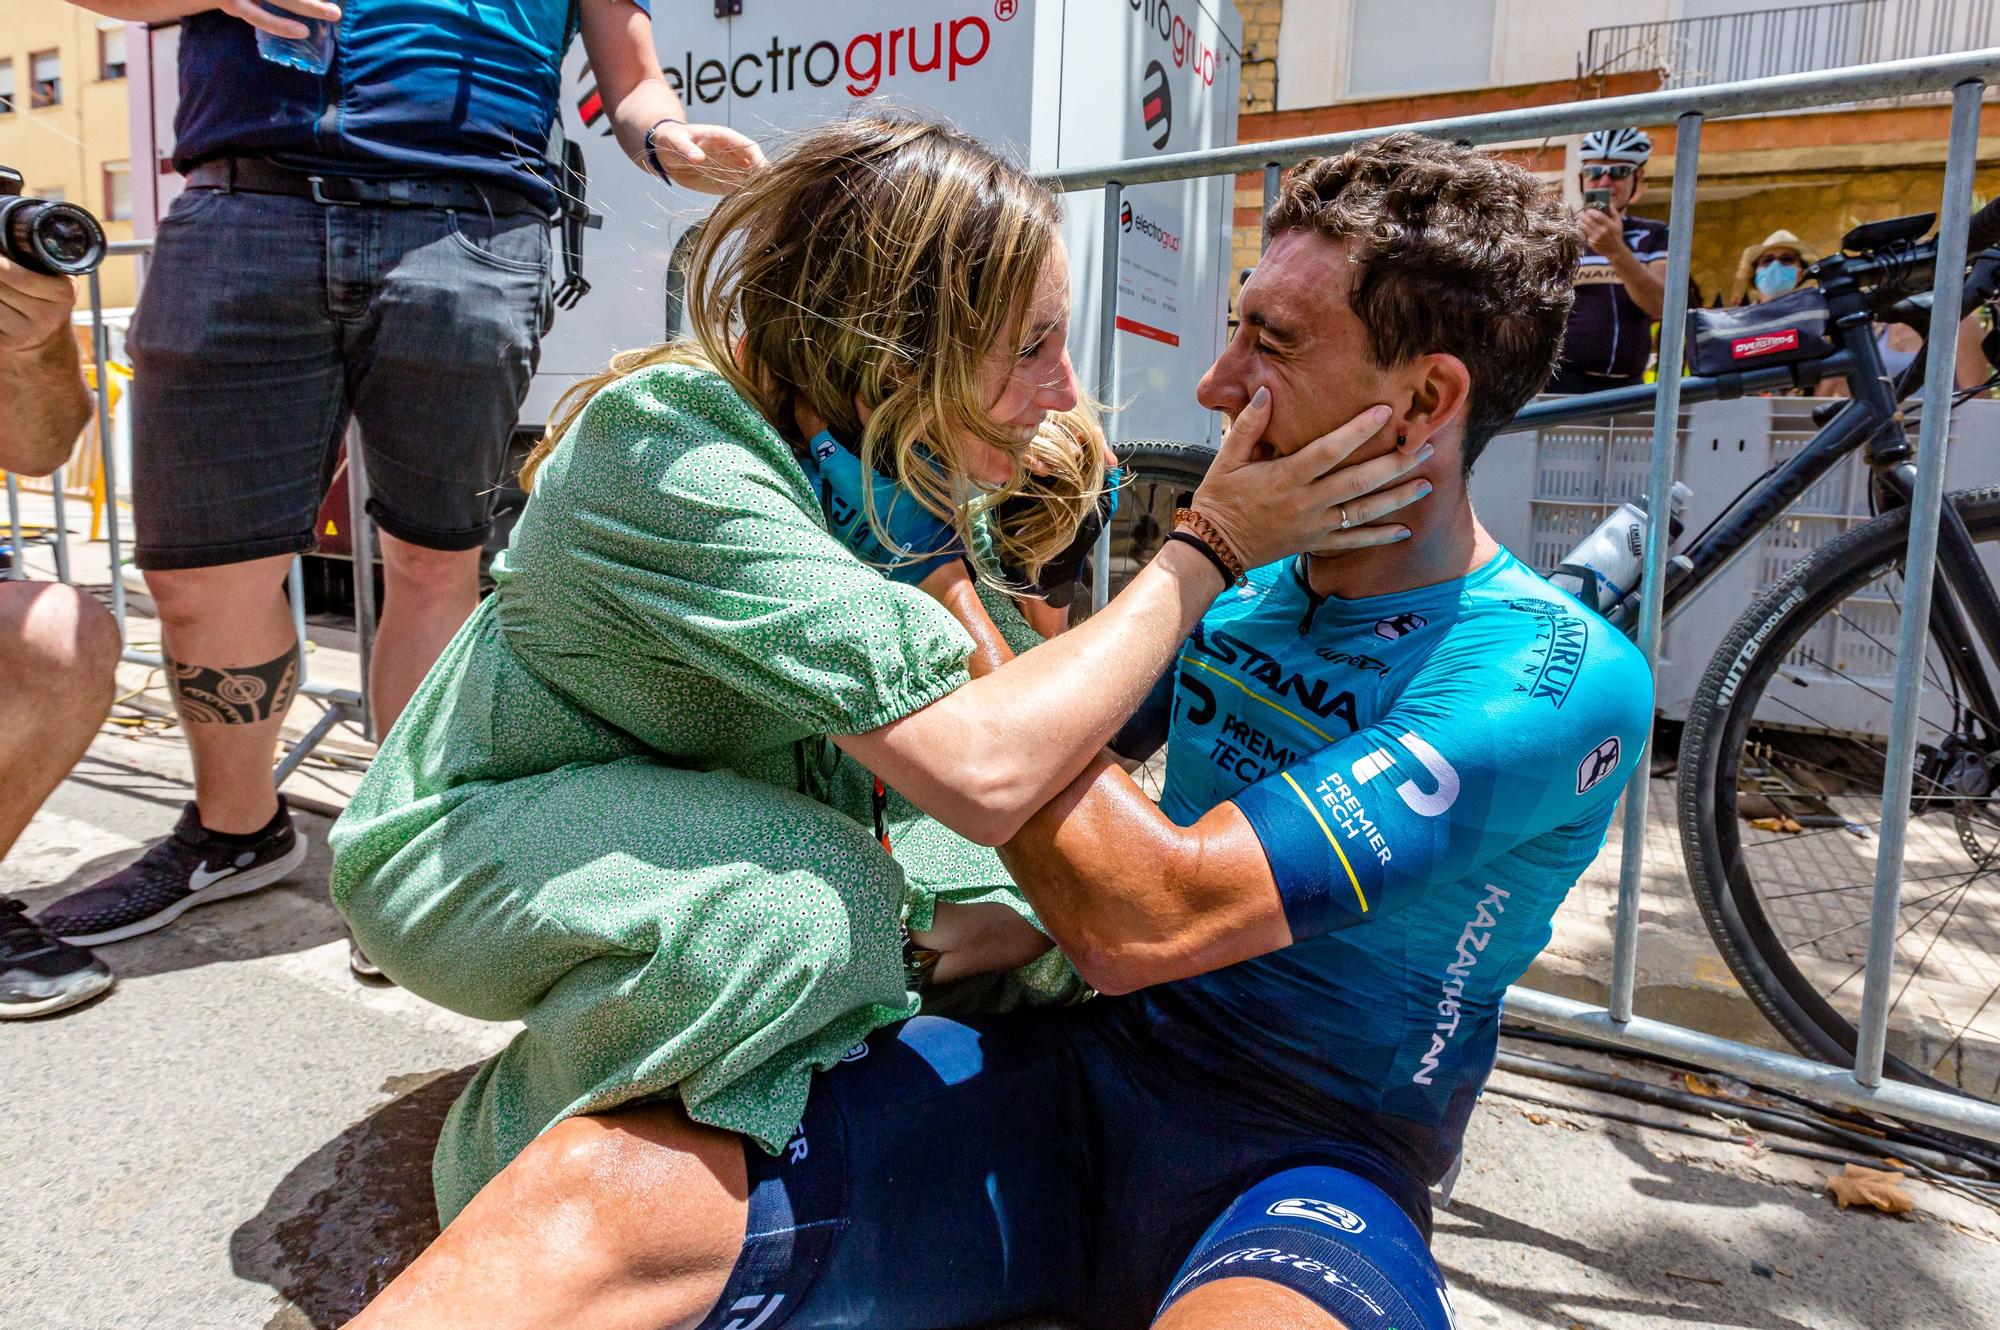 20/6/2021. El ciclista Omar Fraile gana el Campeonato de España de Ciclismo 2021 celebrado en La Nucía y es recibido en meta por su novia embarazada.